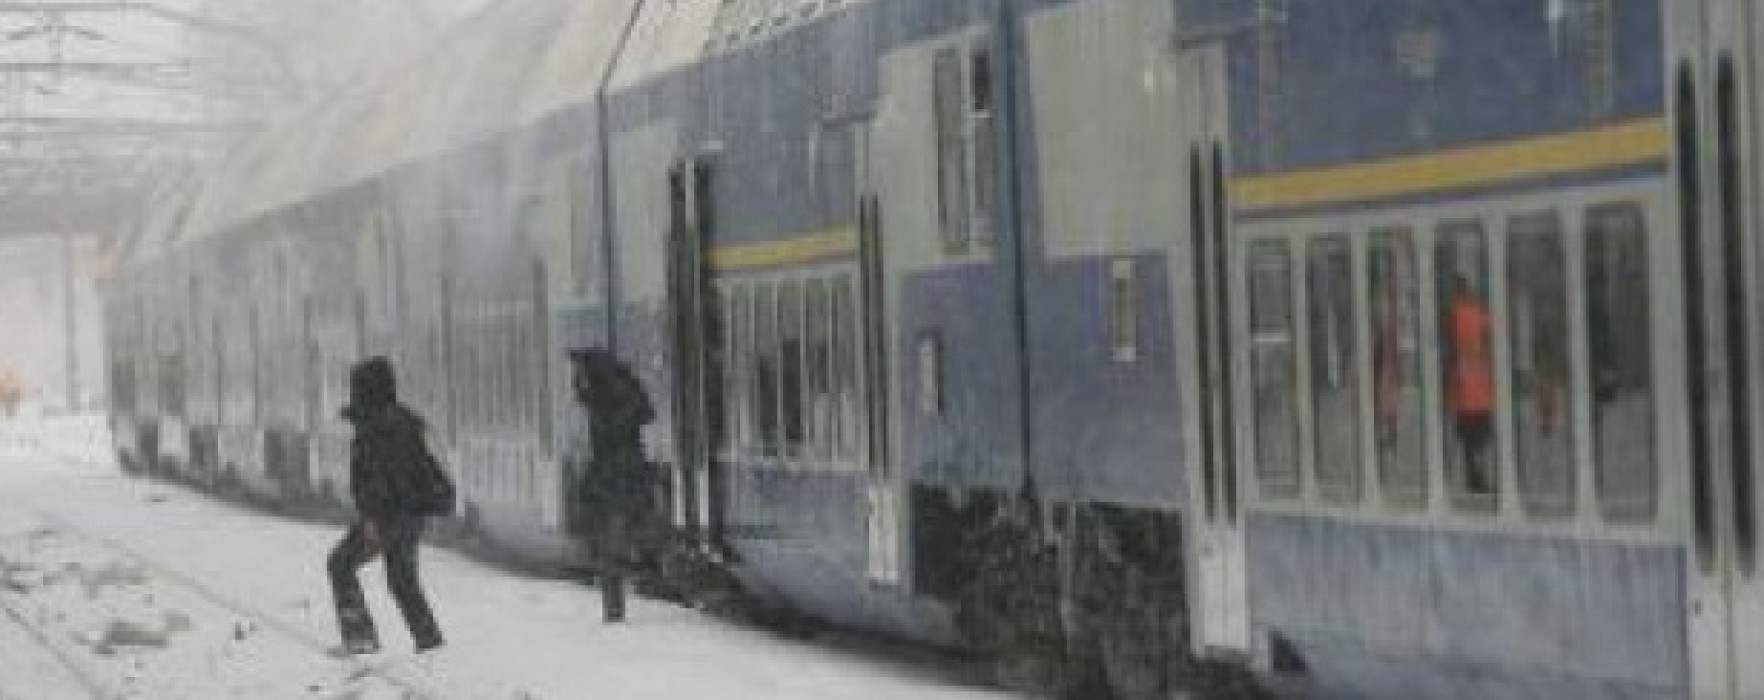 Pasagerii din trenul blocat la Nucet vor fi preluaţi de autobuze